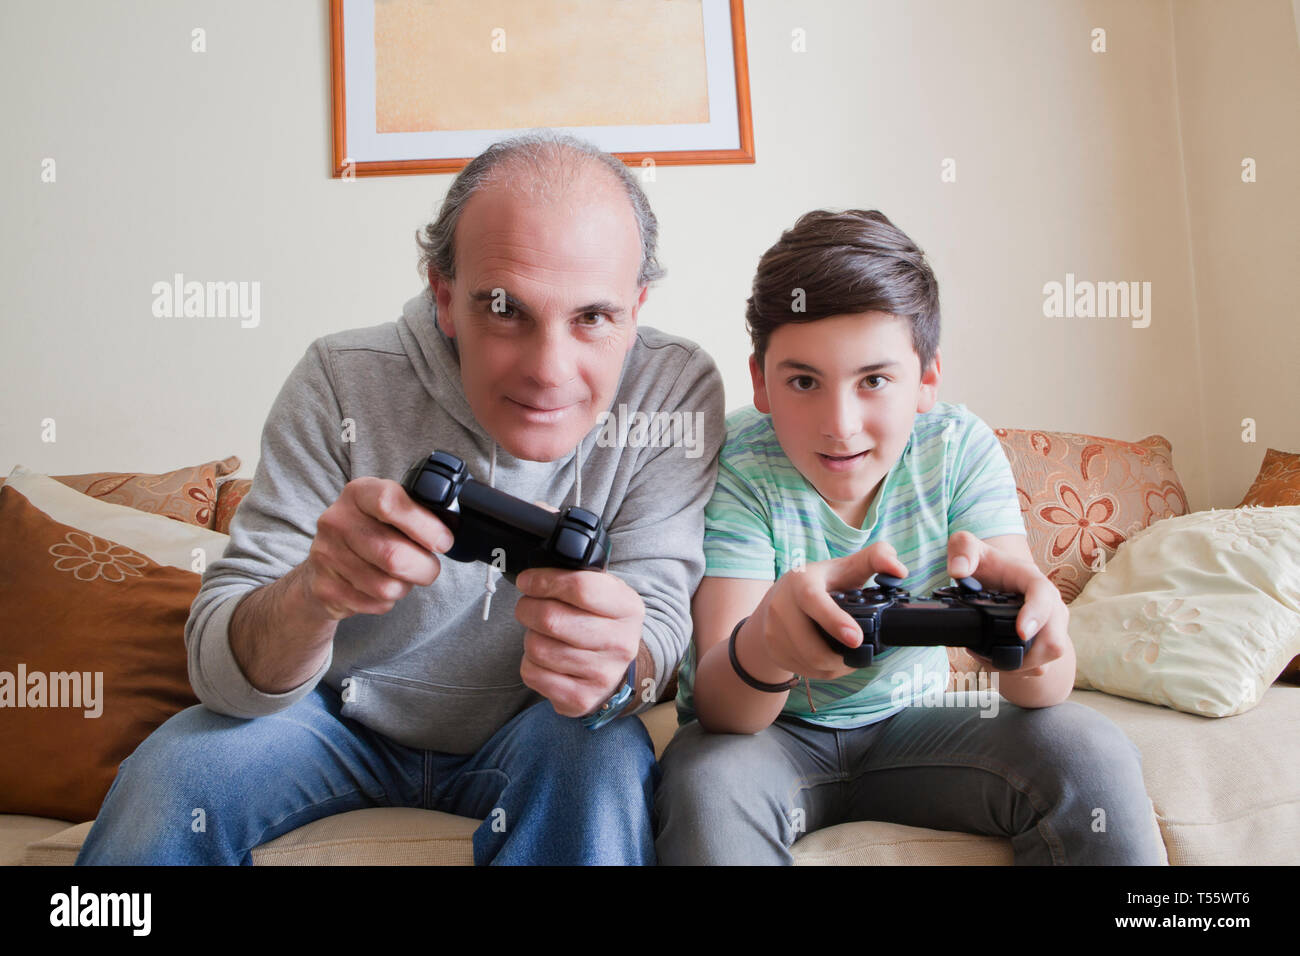 Père et fils adolescent playing video game Banque D'Images